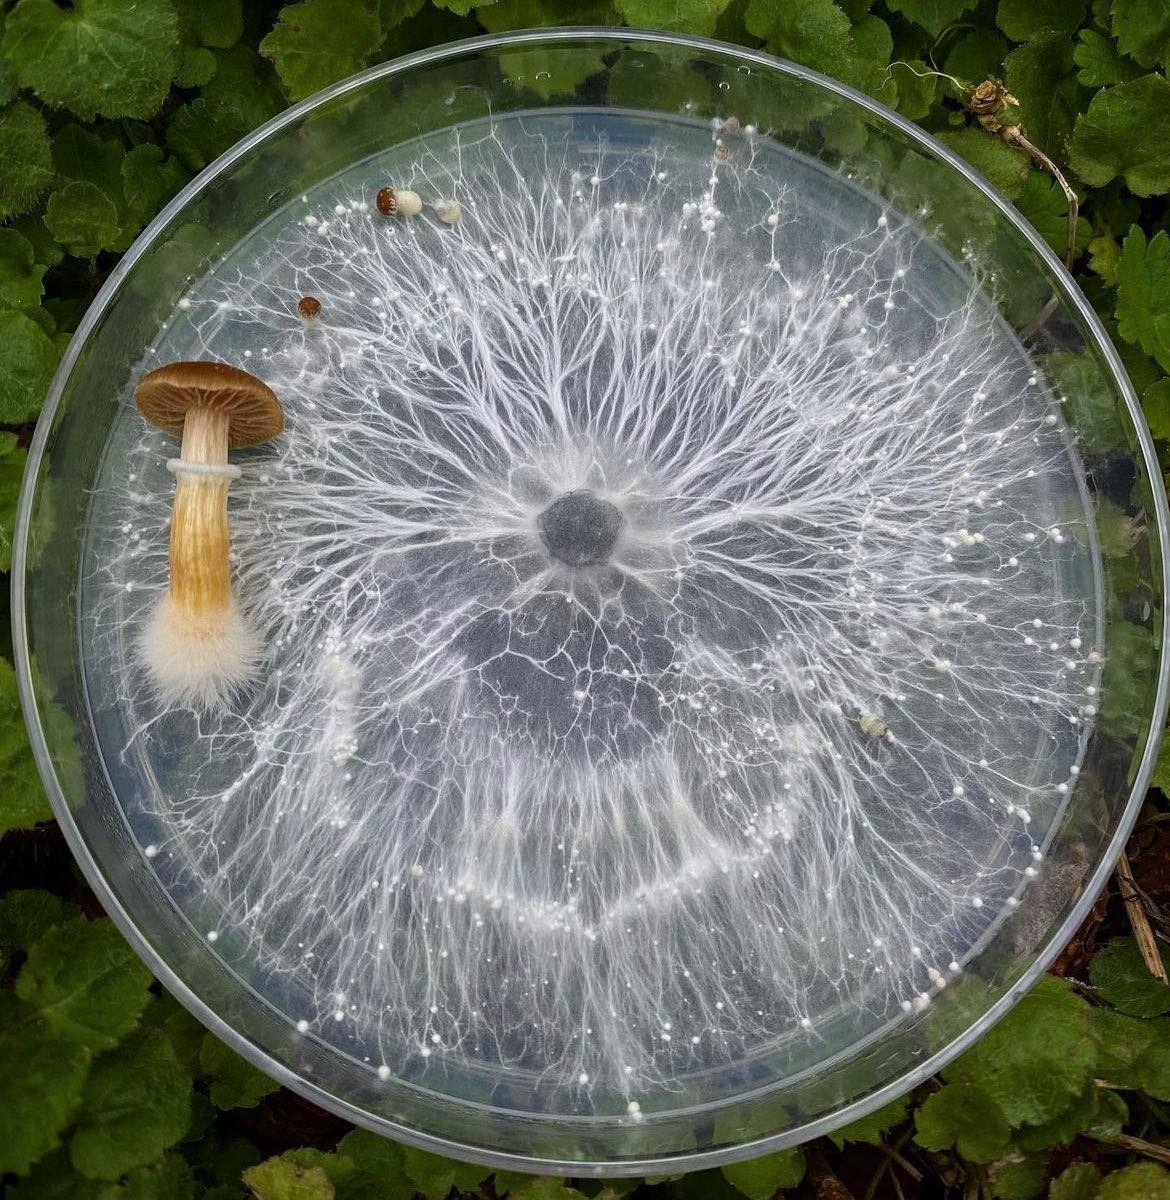 Мицелий гриба в чашке Петри. Хорошо видно как нити мицелия образуют плодовые тела на поверхности питательной среды.